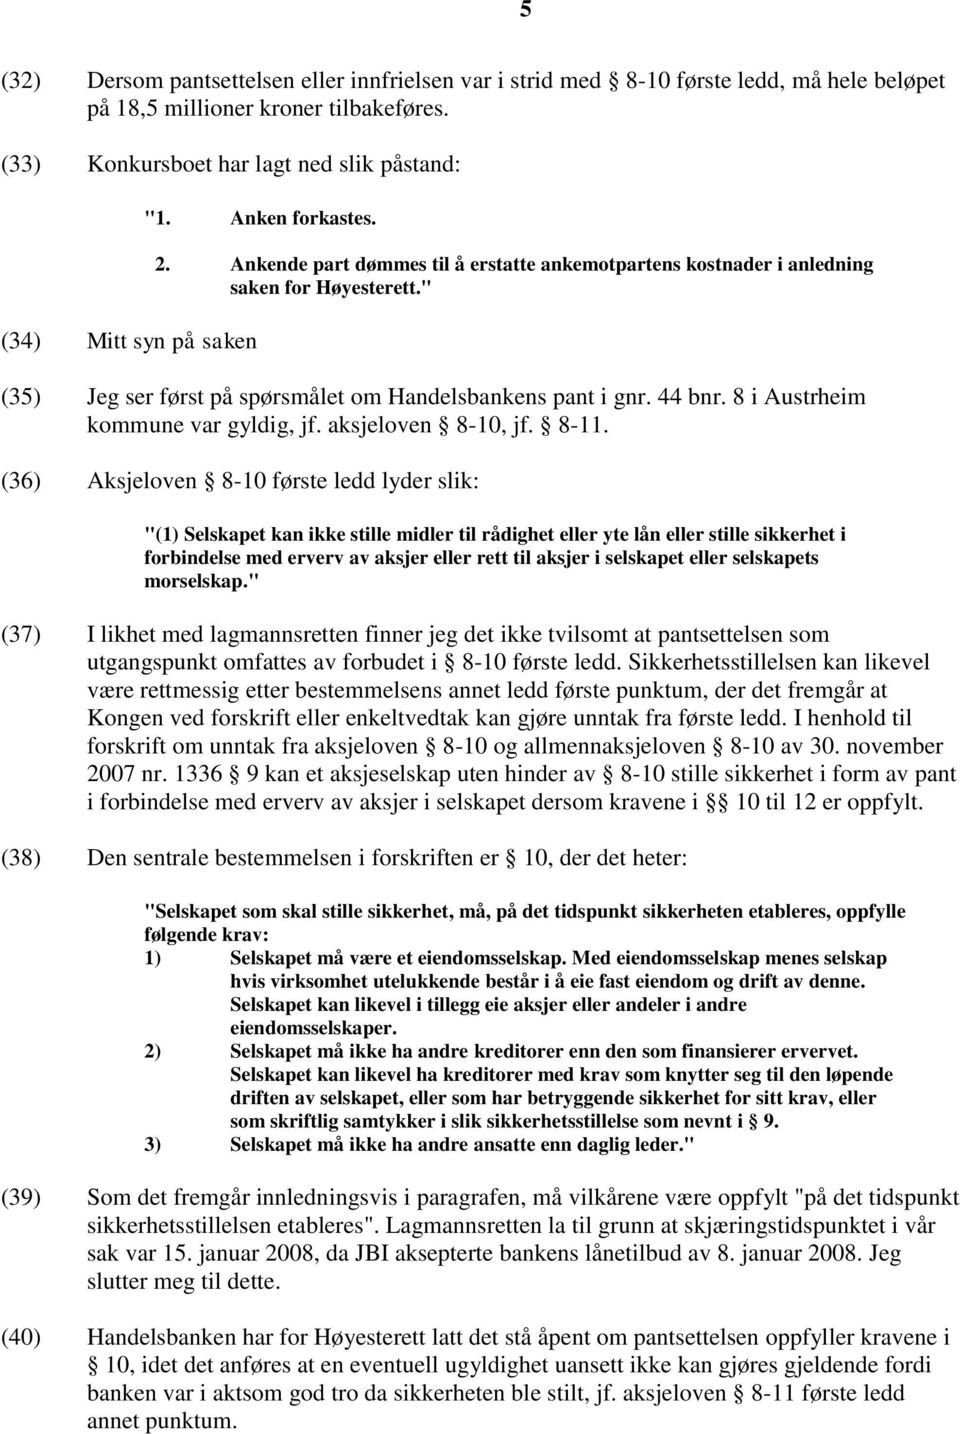 " (35) Jeg ser først på spørsmålet om Handelsbankens pant i gnr. 44 bnr. 8 i Austrheim kommune var gyldig, jf. aksjeloven 8-10, jf. 8-11.